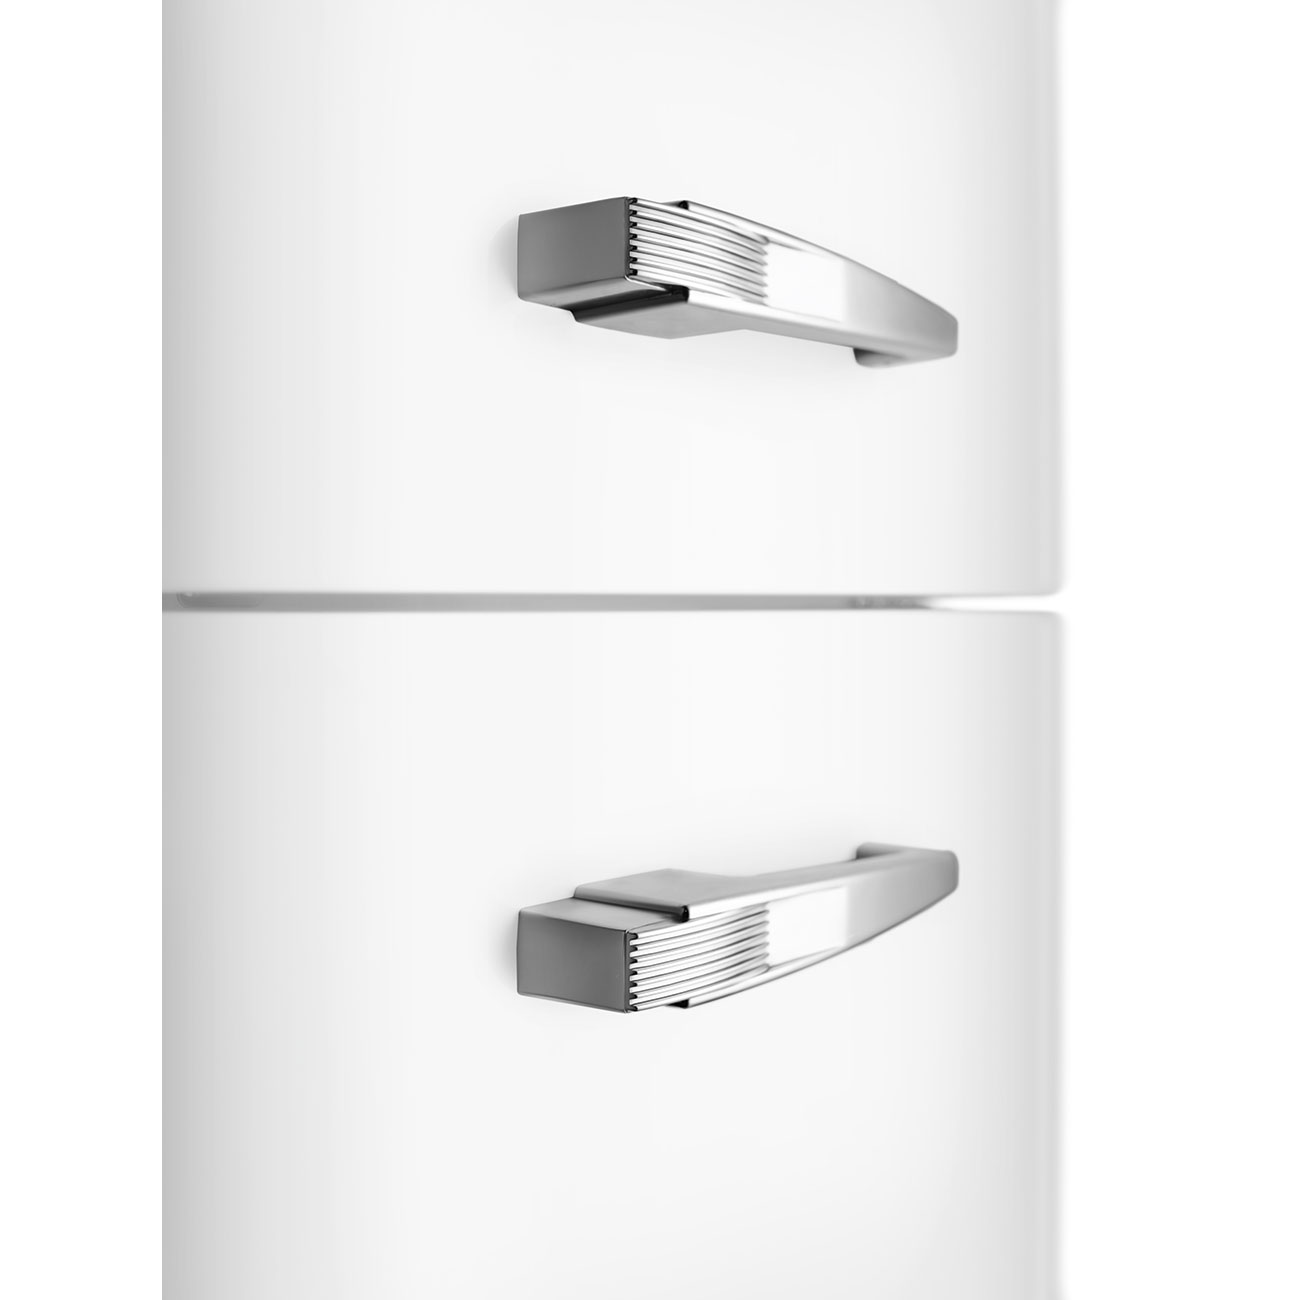 White refrigerator - Smeg_10